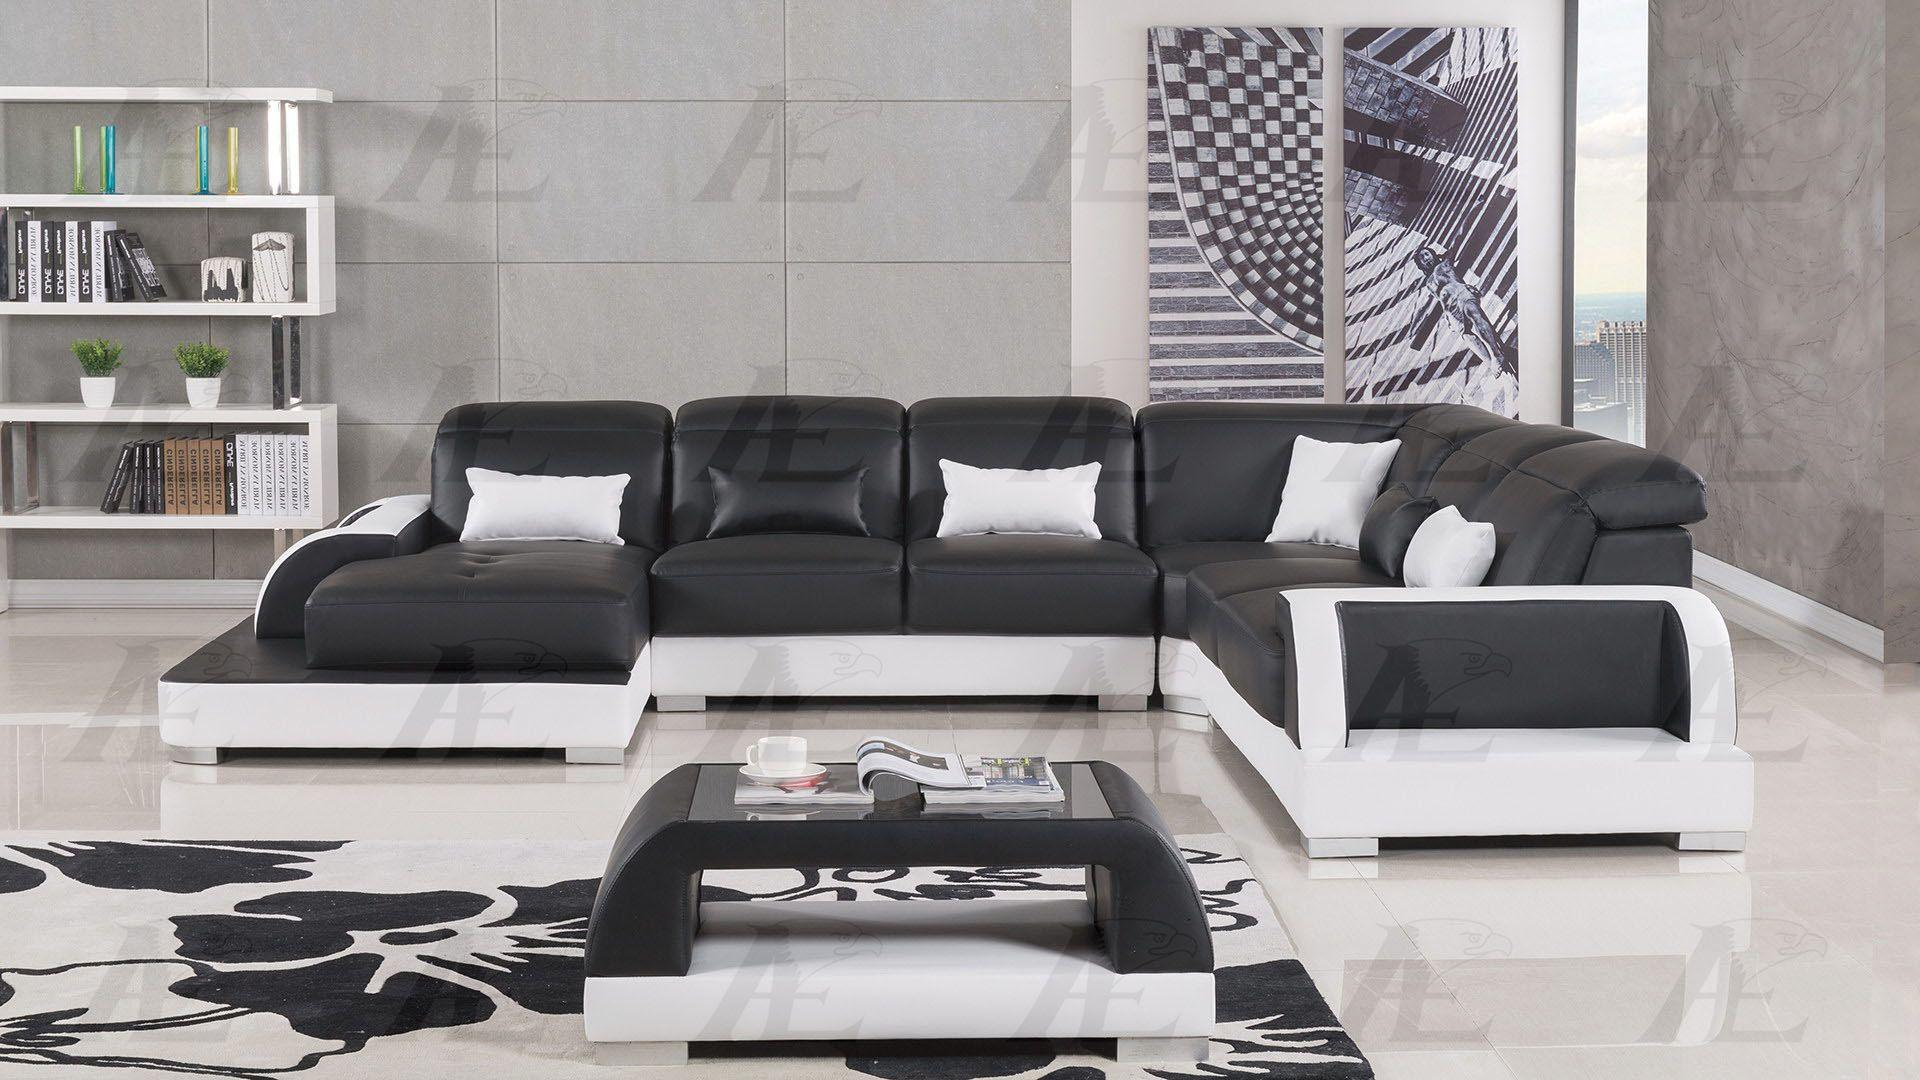 

    
American Eagle Furniture AE-LD811-BK.W Sectional Sofa Set White/Black AE-LD811L-BK.W
